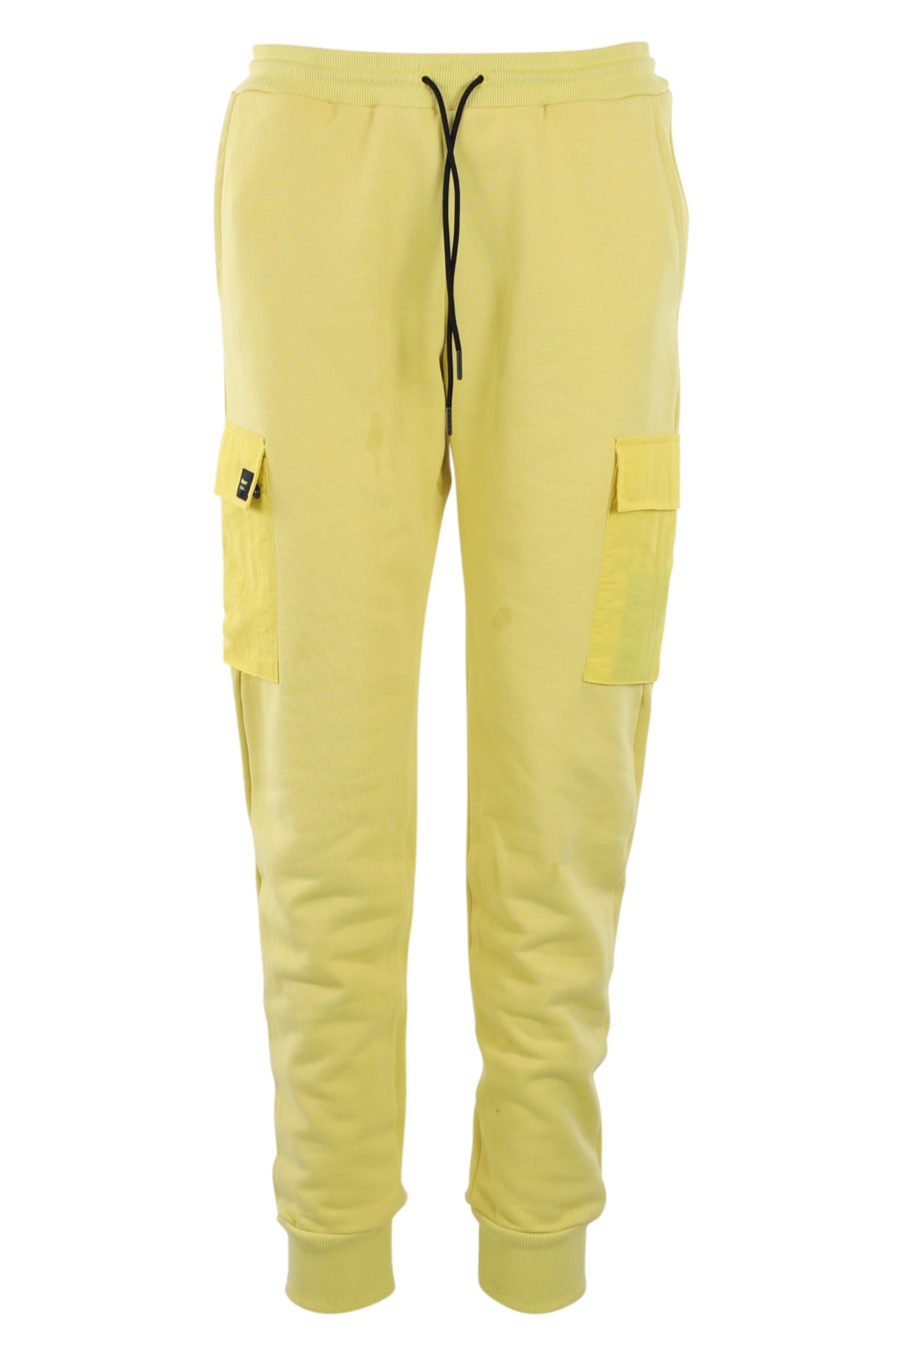 Pantalón de chándal amarillo con bolsillos - IMG 0903